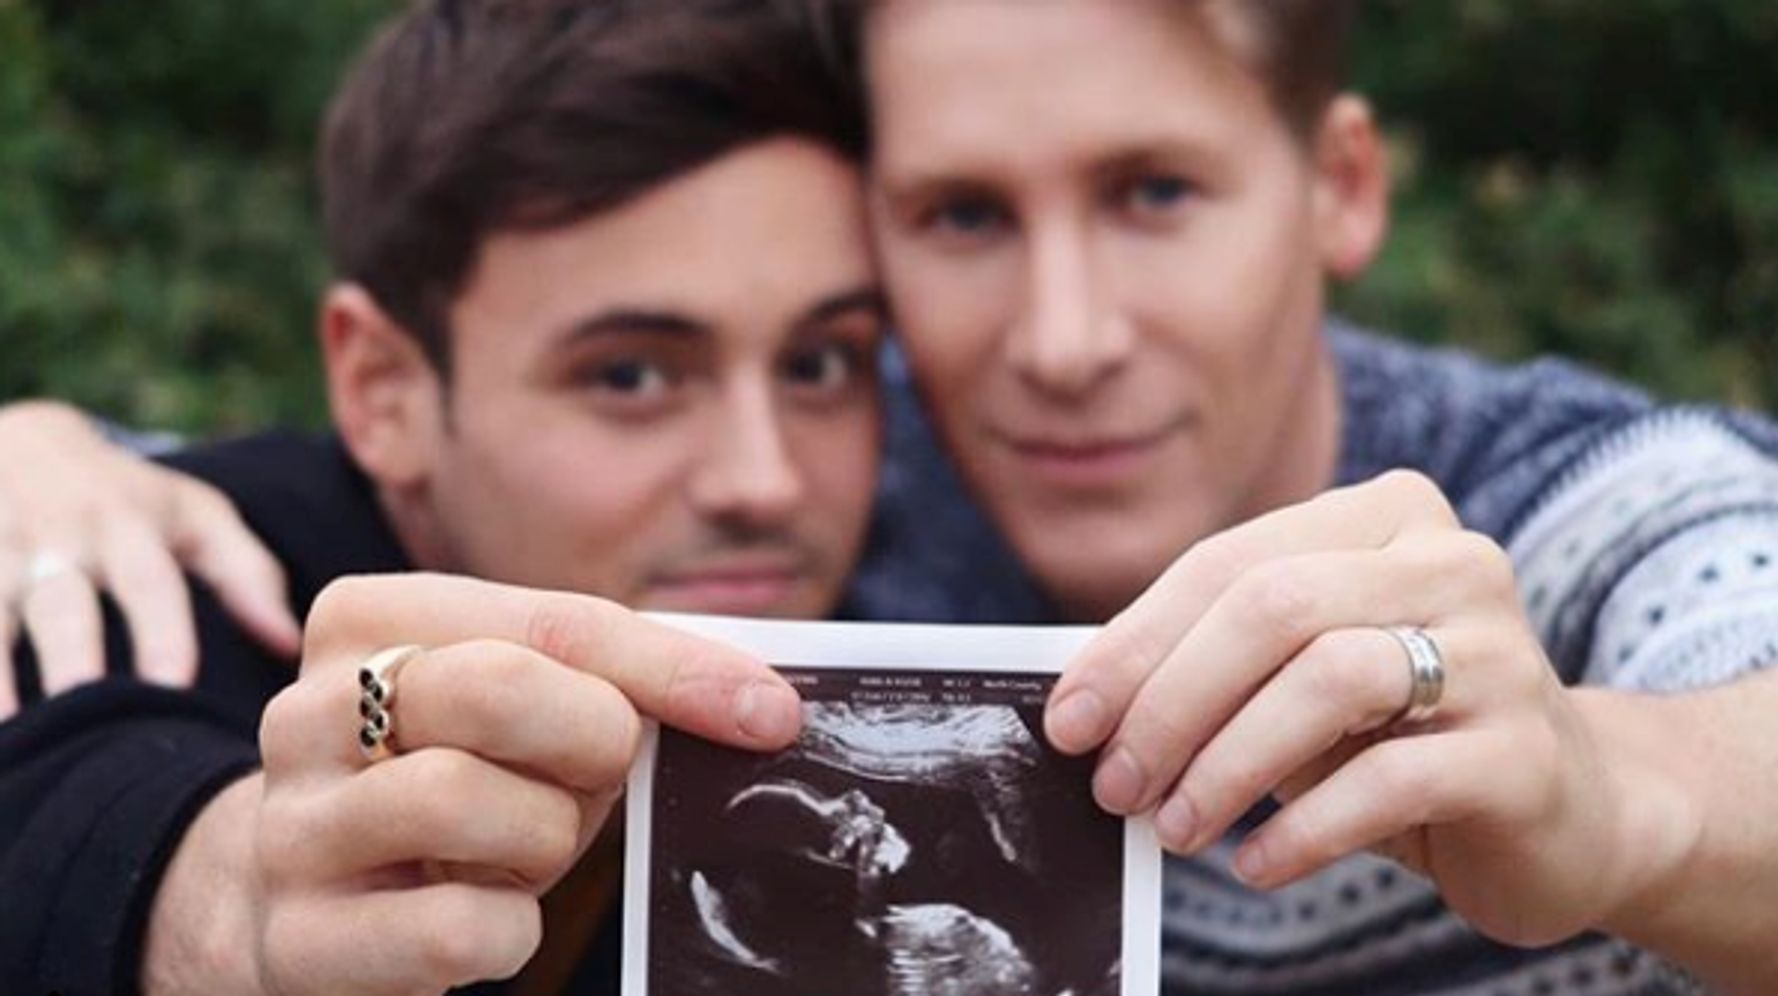 同性婚したオリンピック選手 パパになるよ 赤ちゃんの写真を手に喜びの報告 ハフポスト Life